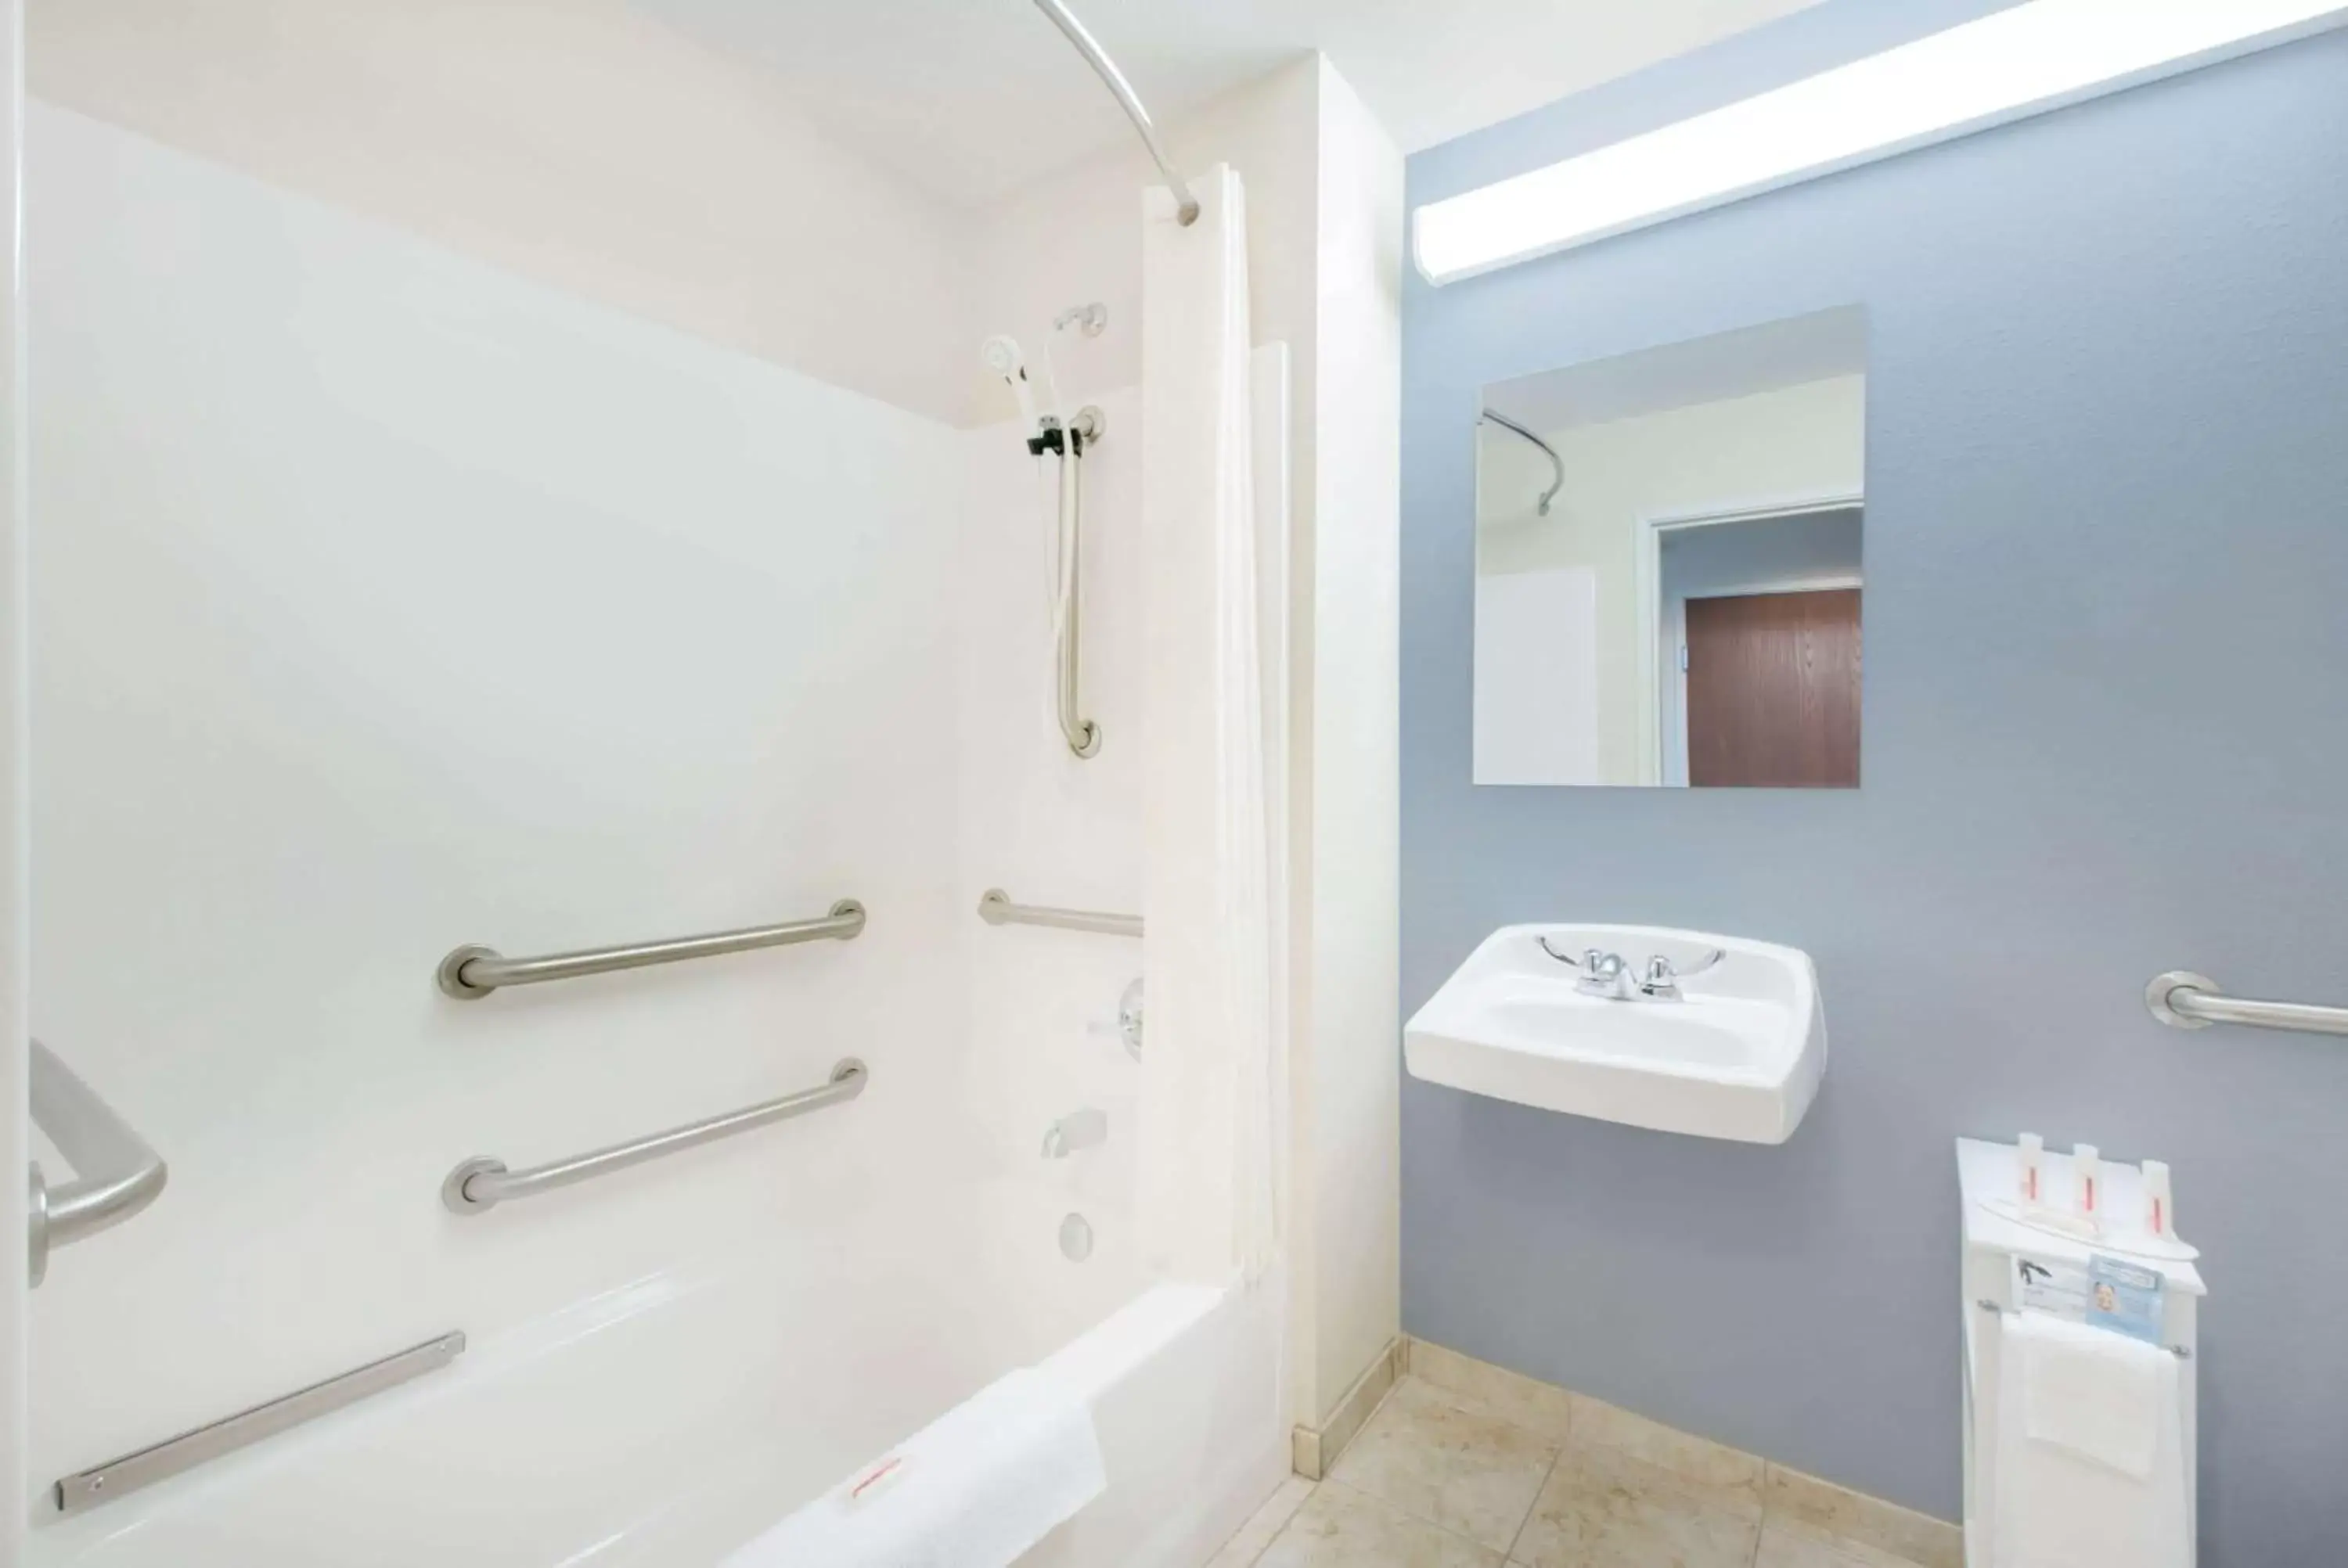 Bathroom in Microtel Inn & Suites by Wyndham Stanley